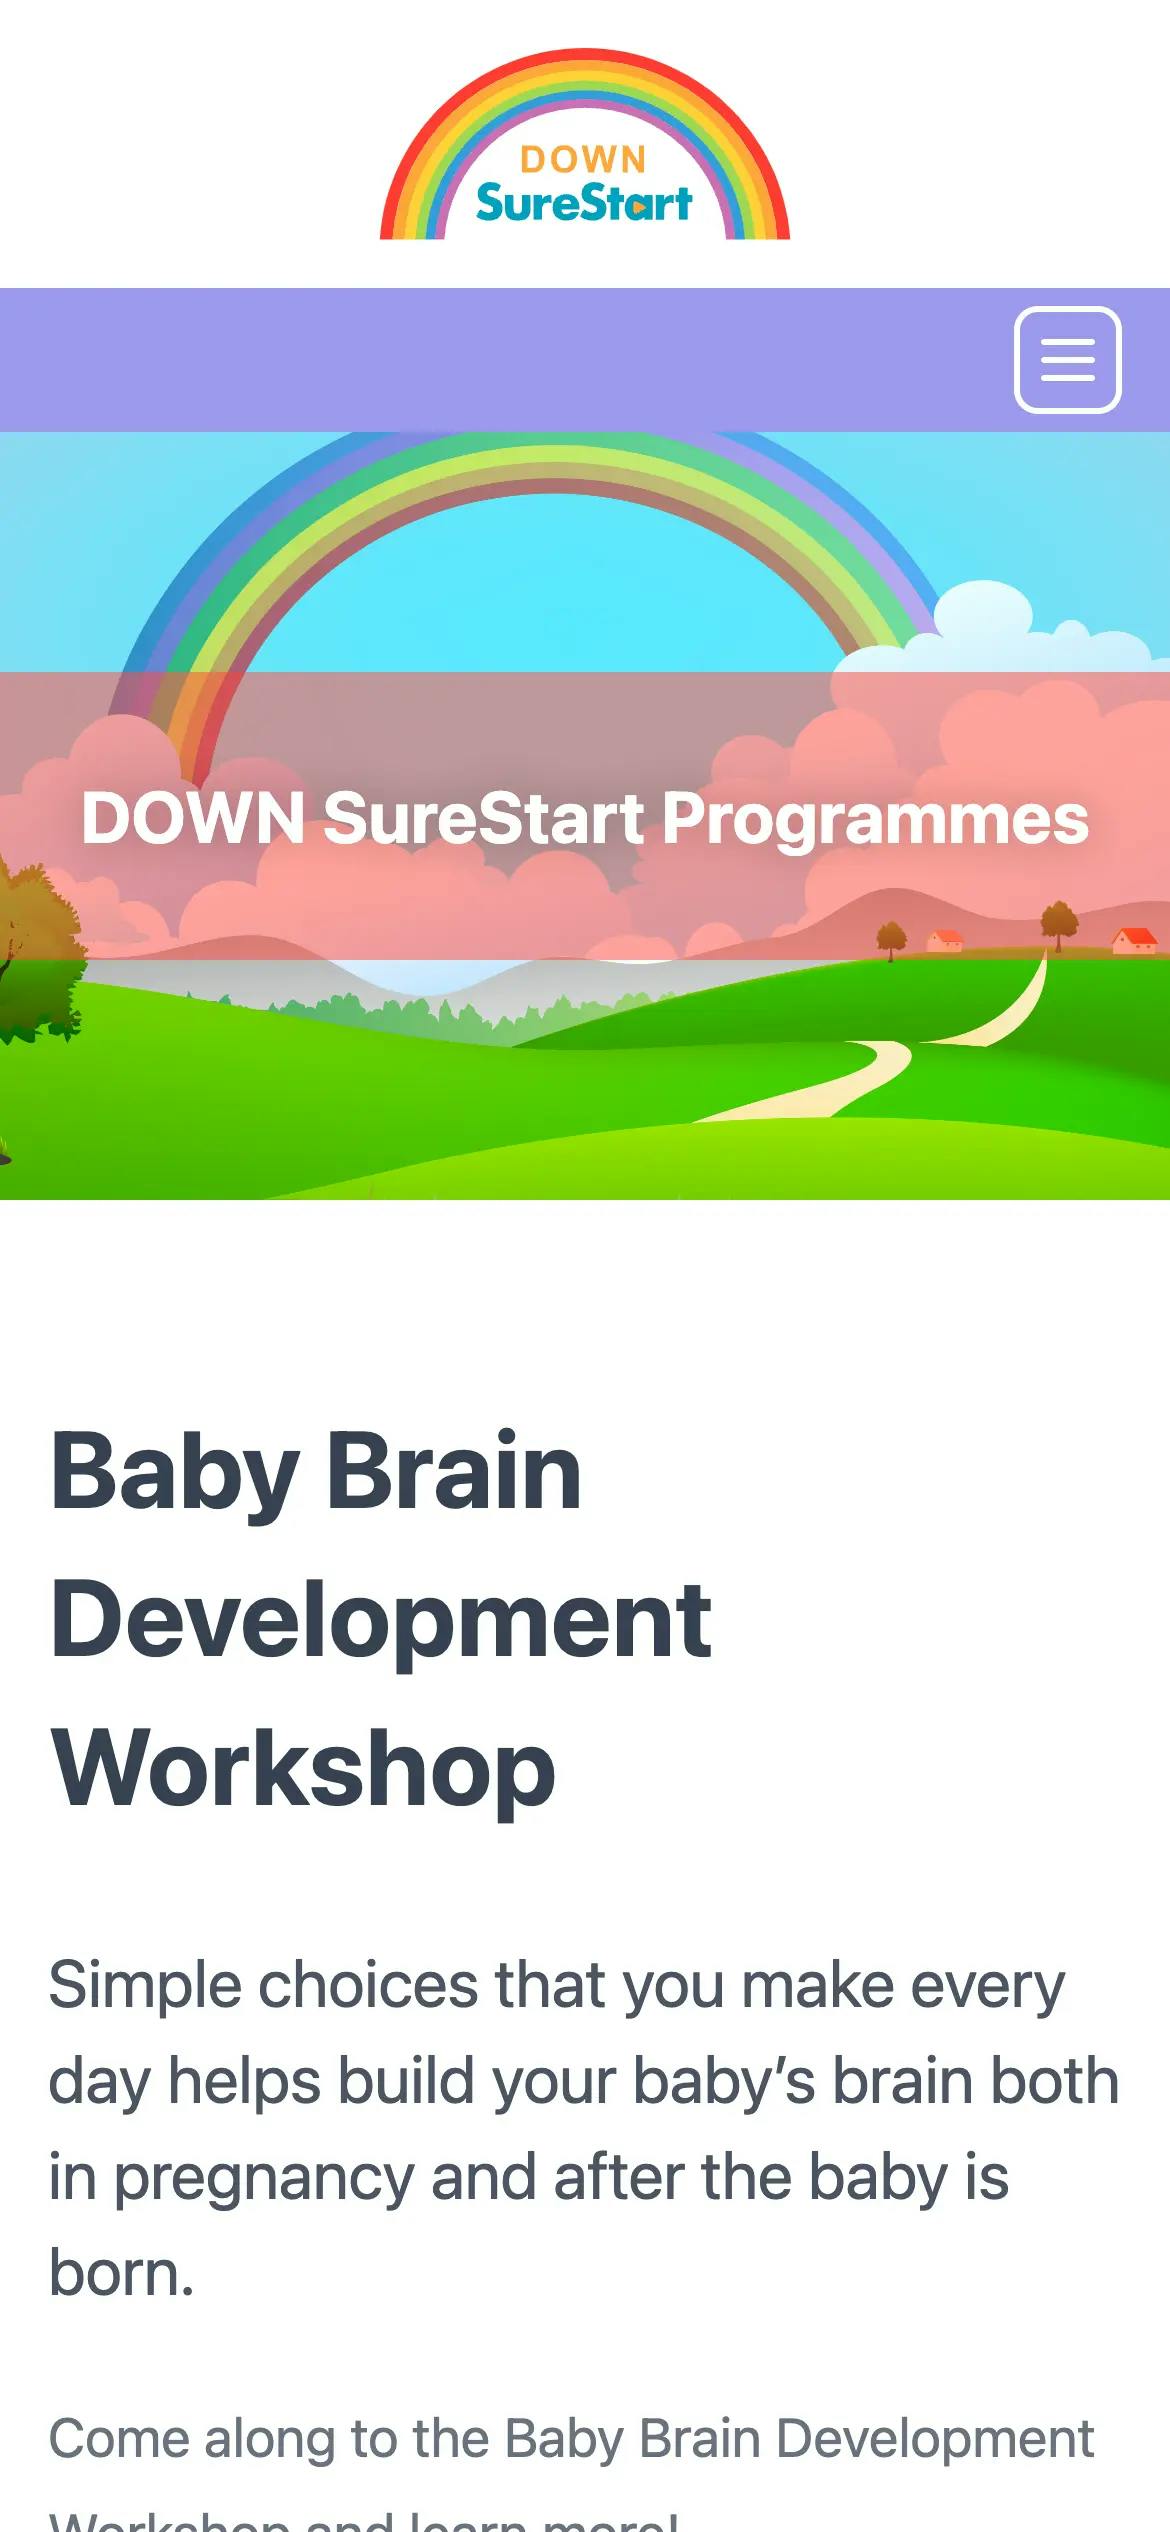 DOWN SureStart programmes page web design on mobile